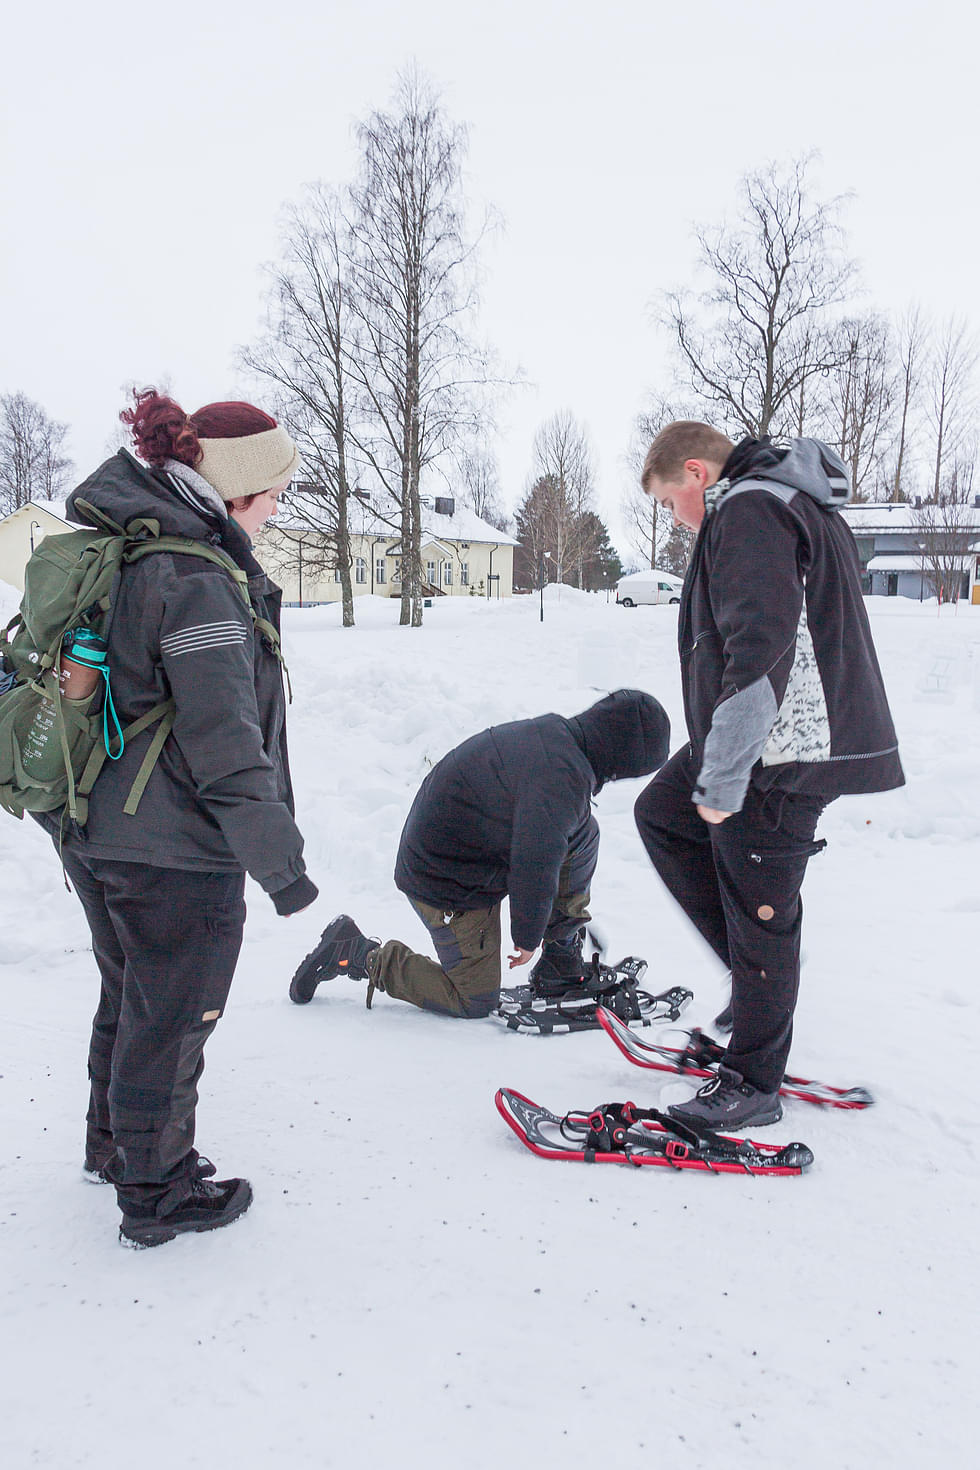 Keskisuomalaiset kahdeksasluokkalaiset Ossi Laitinen ja Niklas Harlamov kokeilivat lumikenkäilyä Rebekka Tupaojan opastuksella.